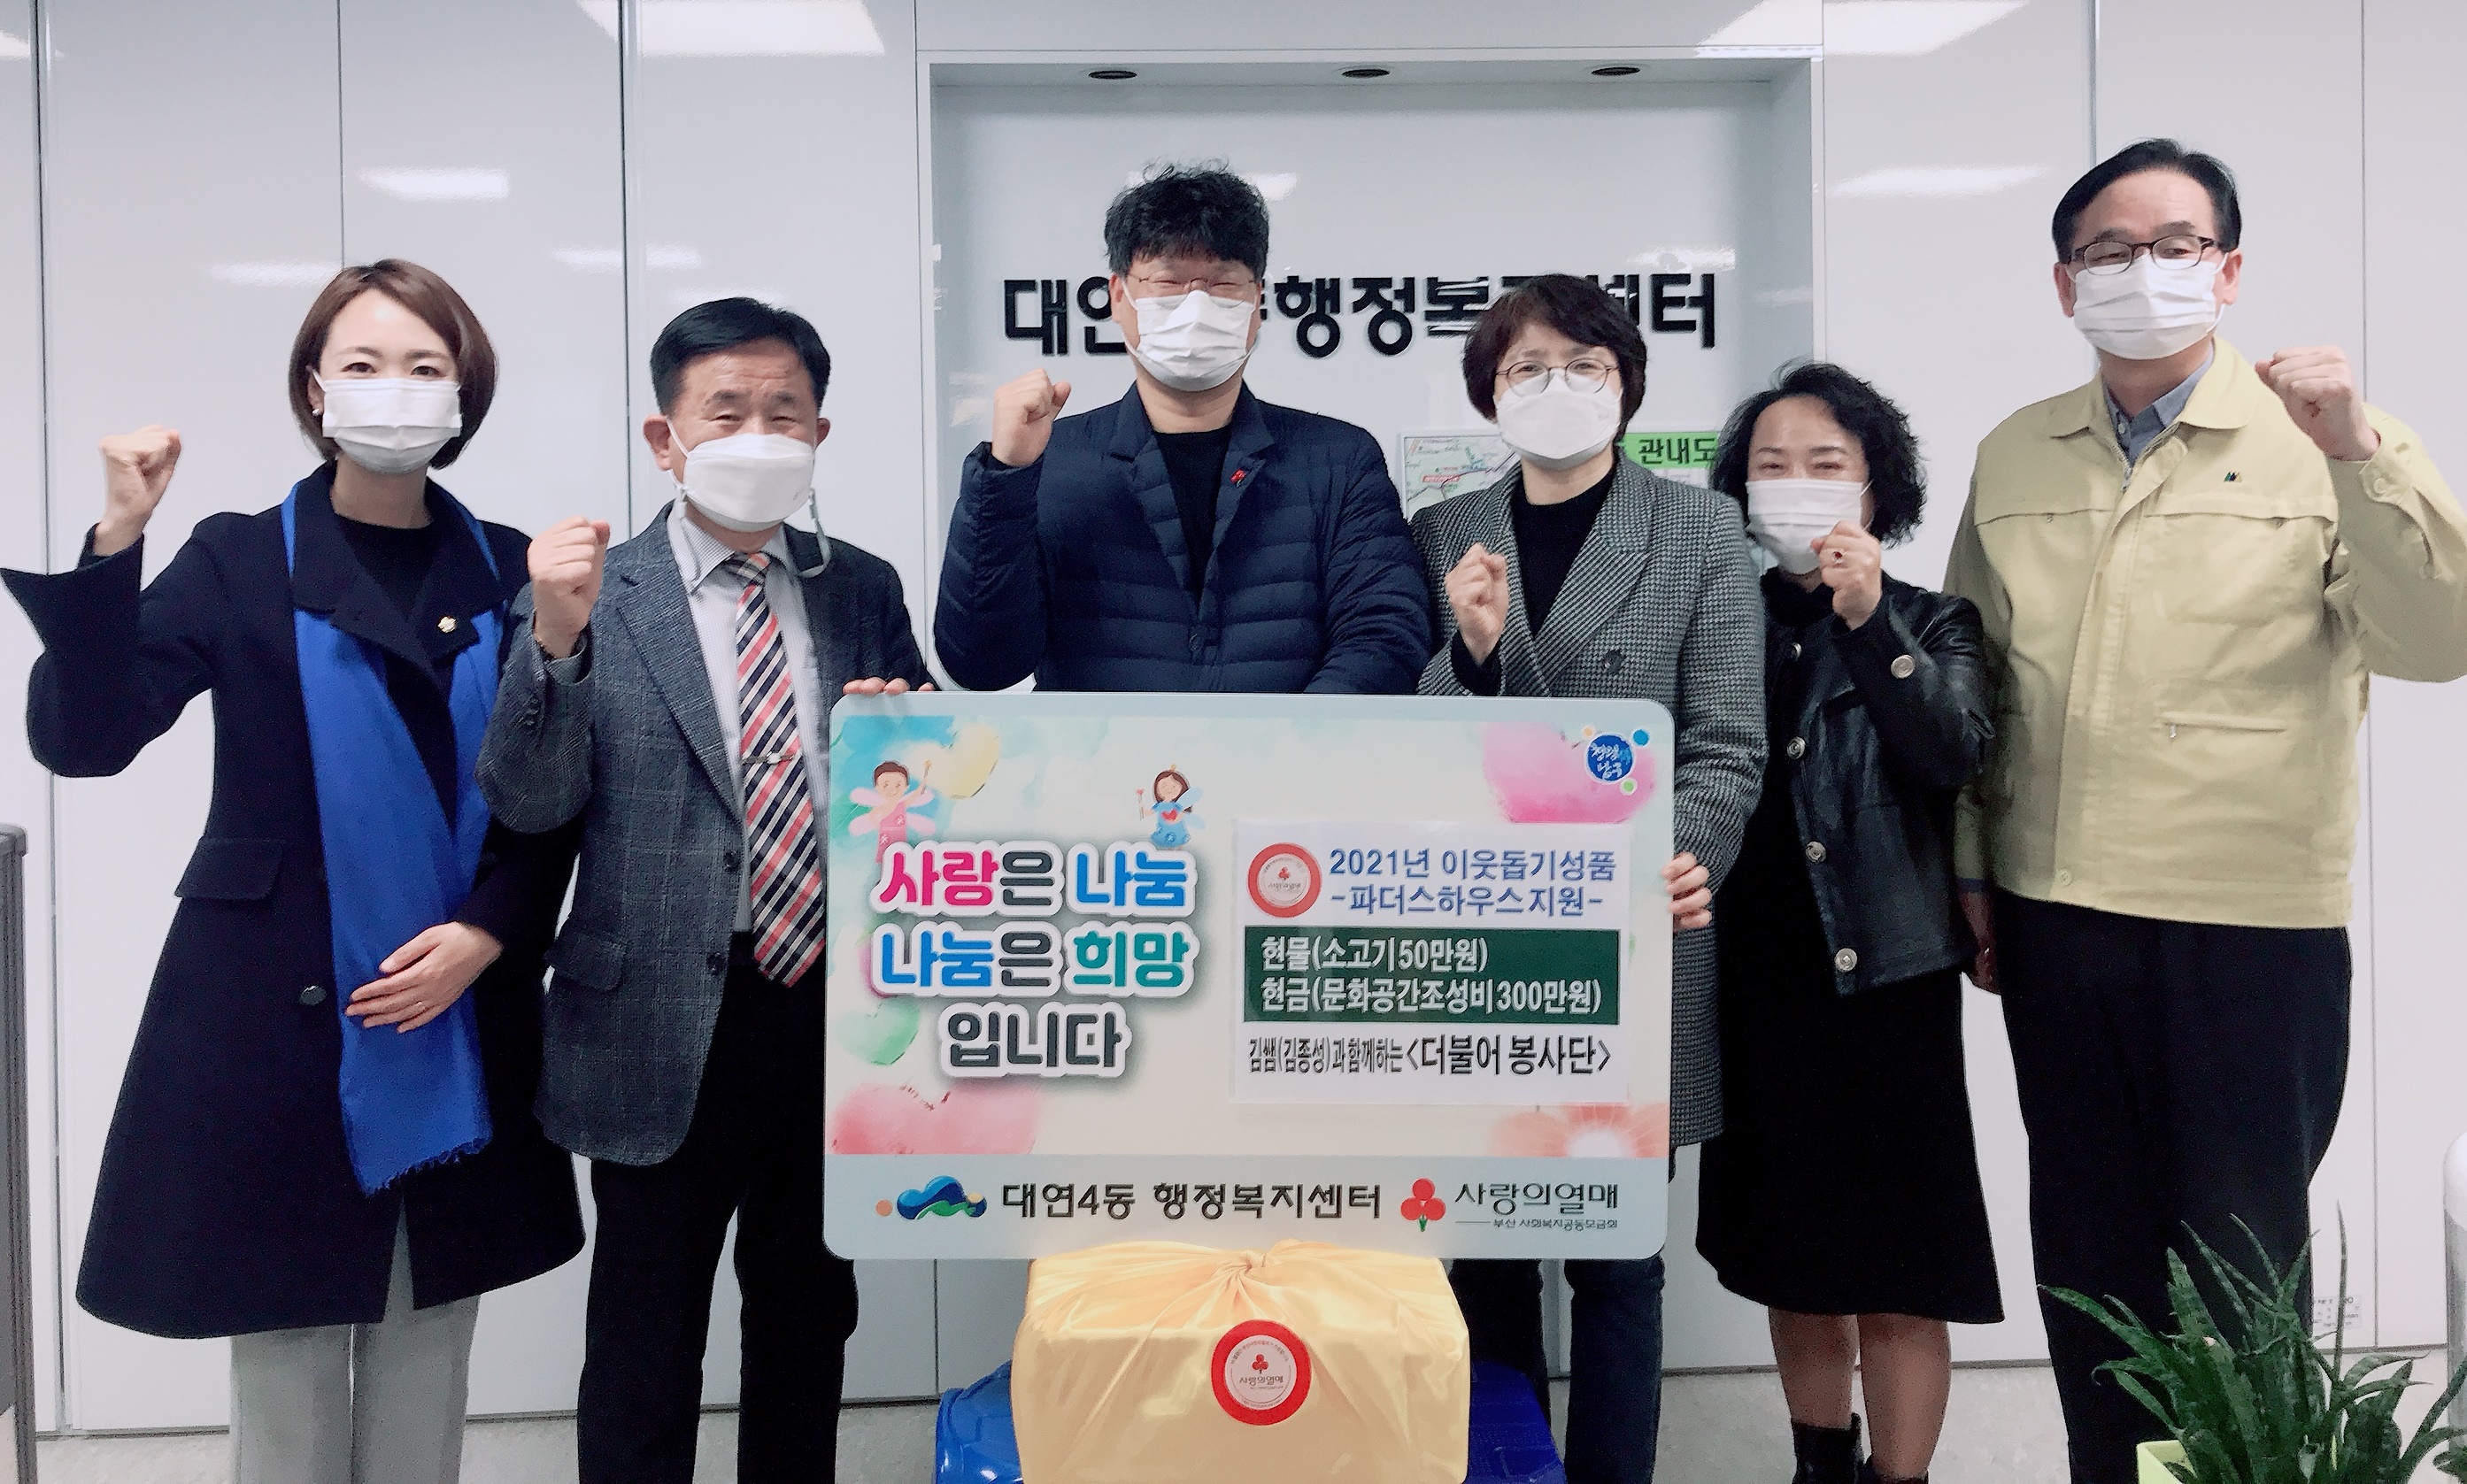 (20210309)대연4동 김쌤(김종성)과 함께하는 ‘더불어봉사단’ 아동복지시설에 성금품 기부0